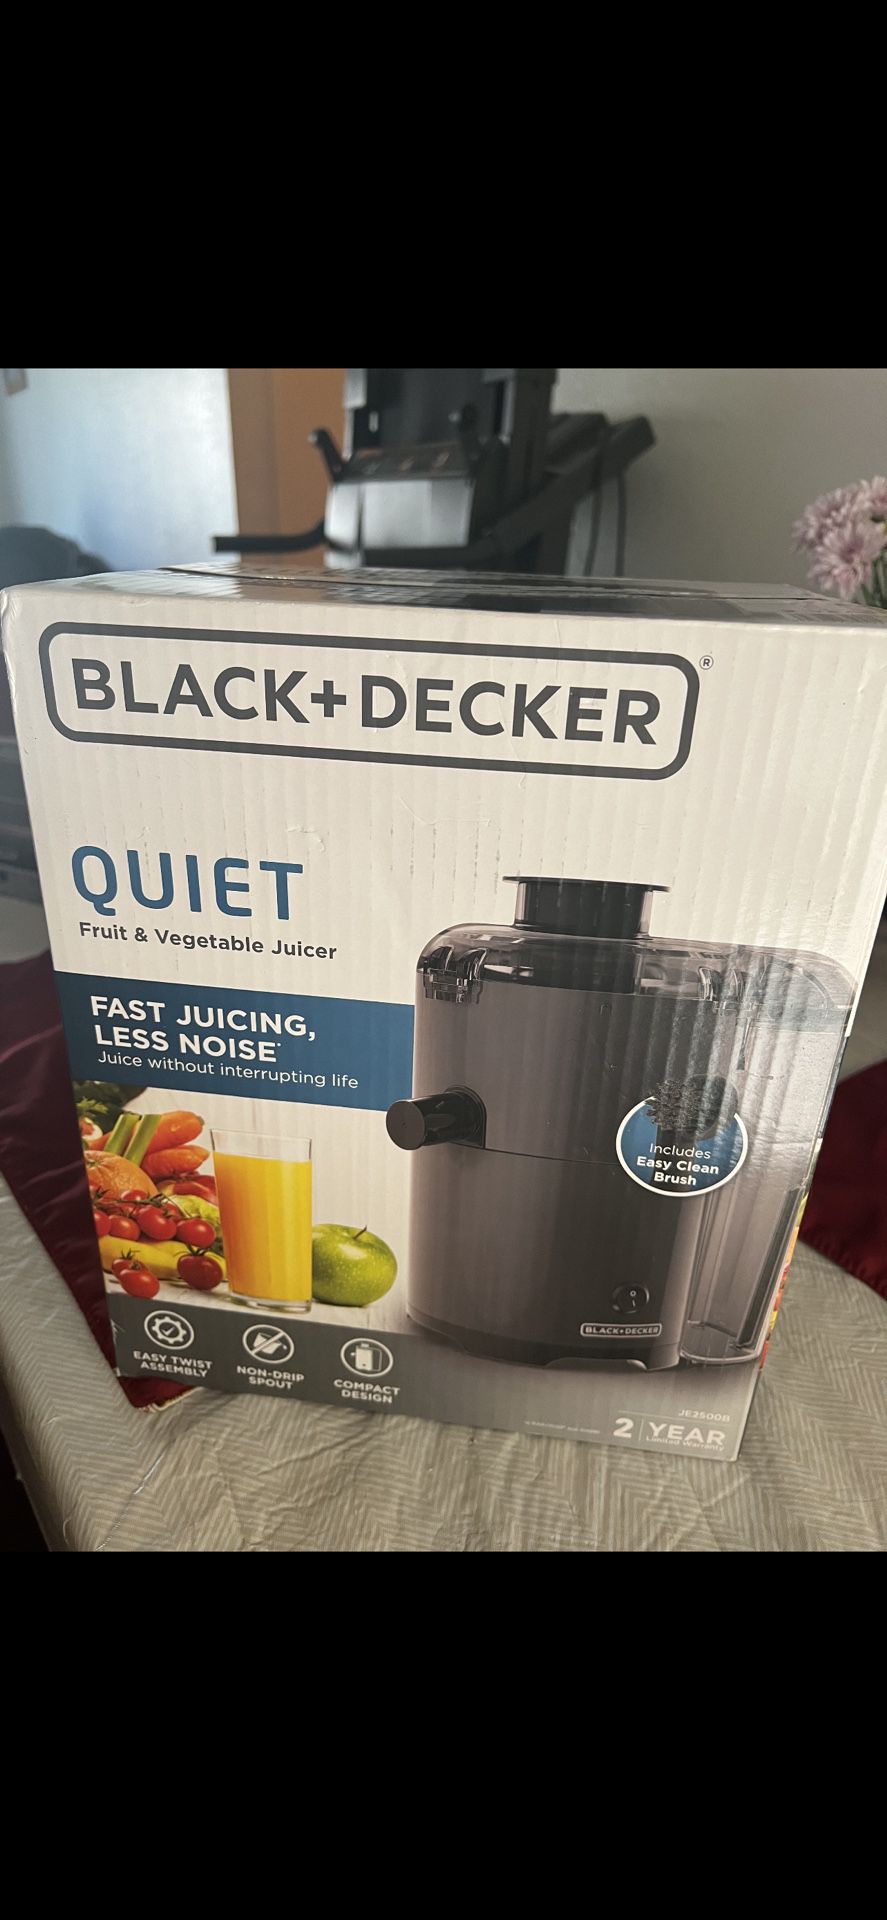 Black+Decker Quiet Fruit & Vegetable Juicer, Non-Drip Spout Easy